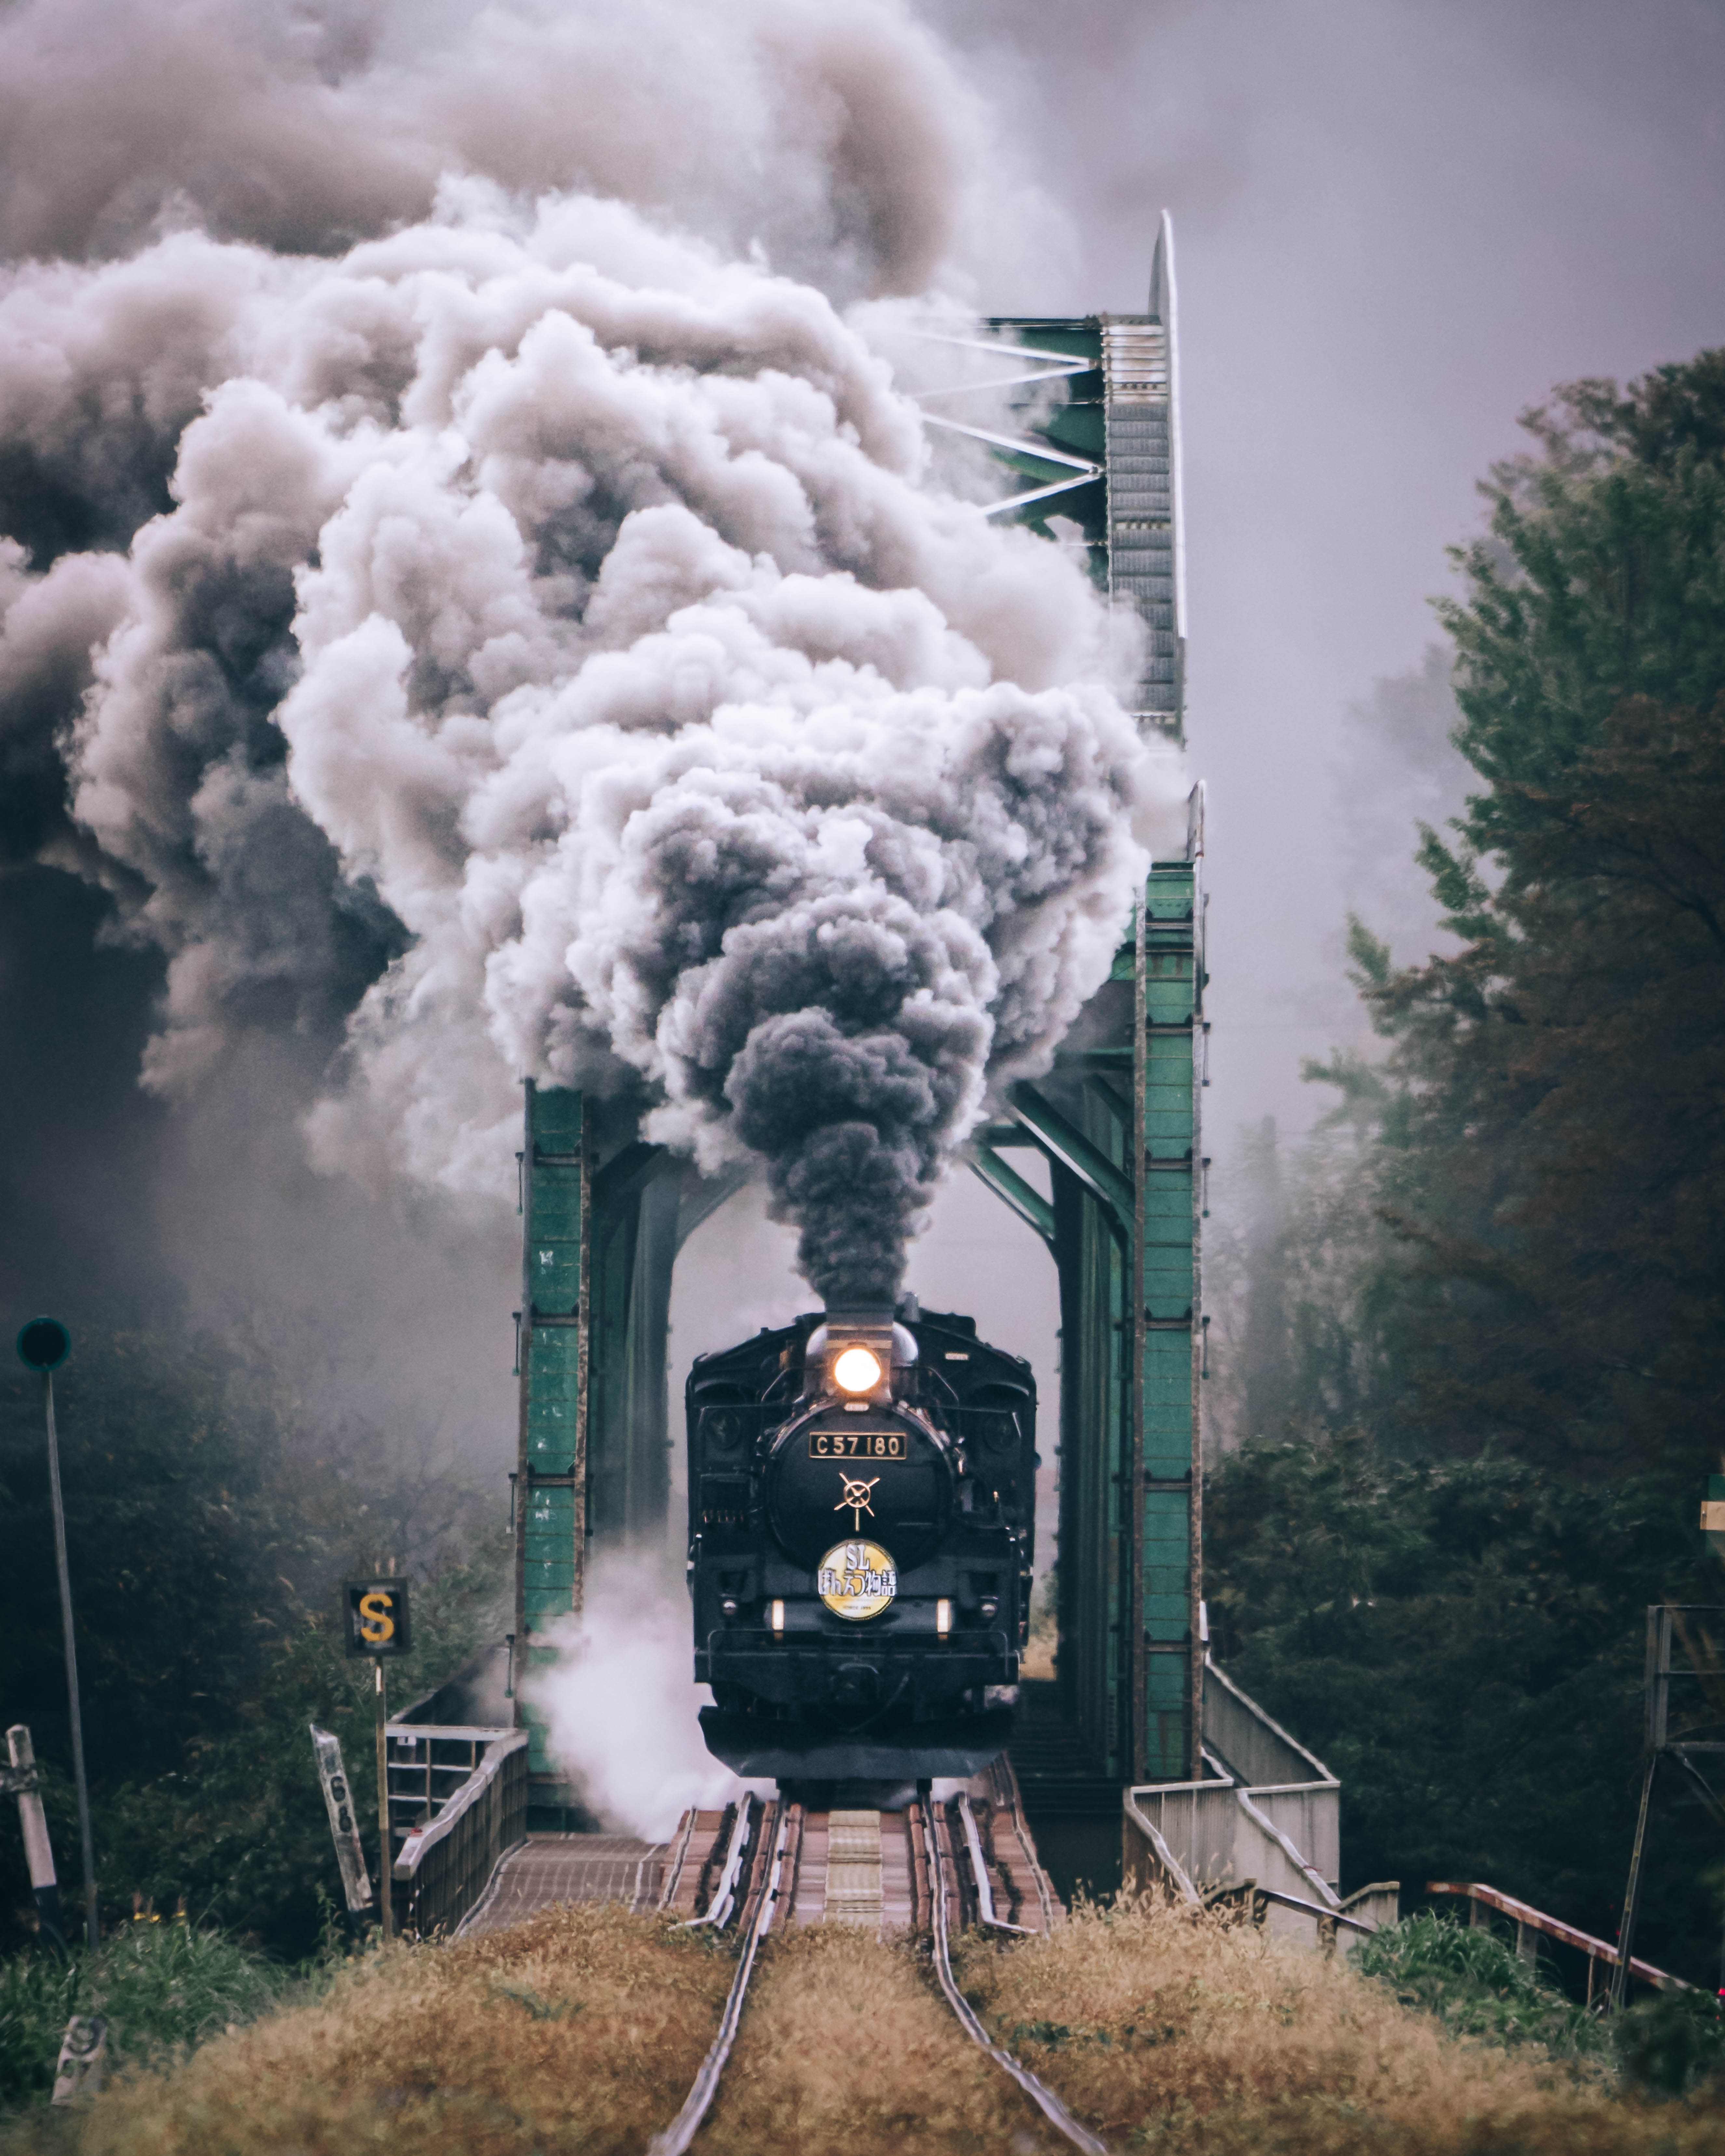 A steam train crosses a railway bridge.